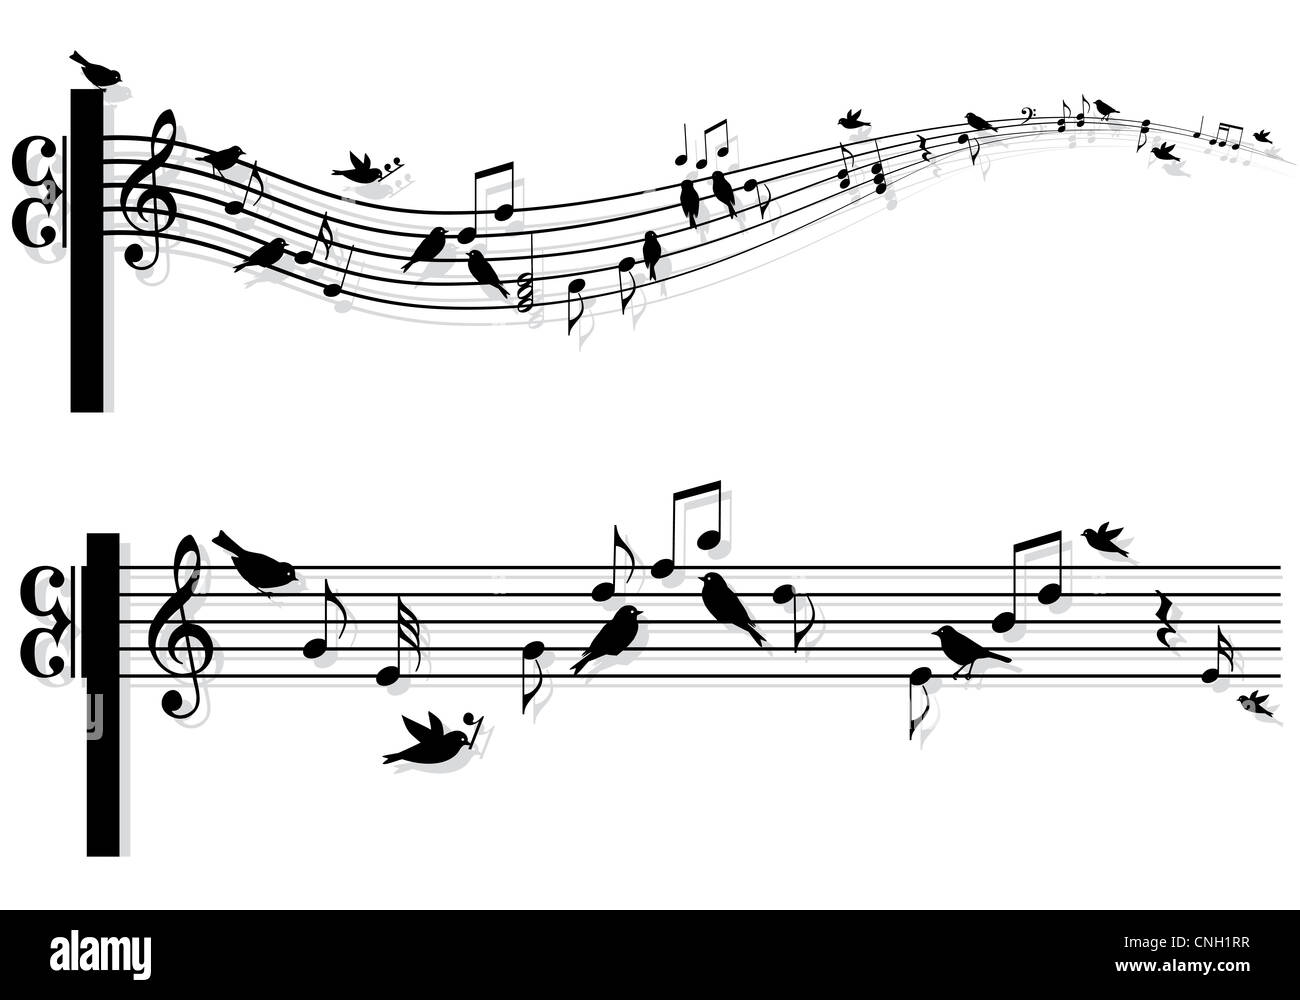 Notes de musique avec des chants d'oiseaux, vector background Banque D'Images